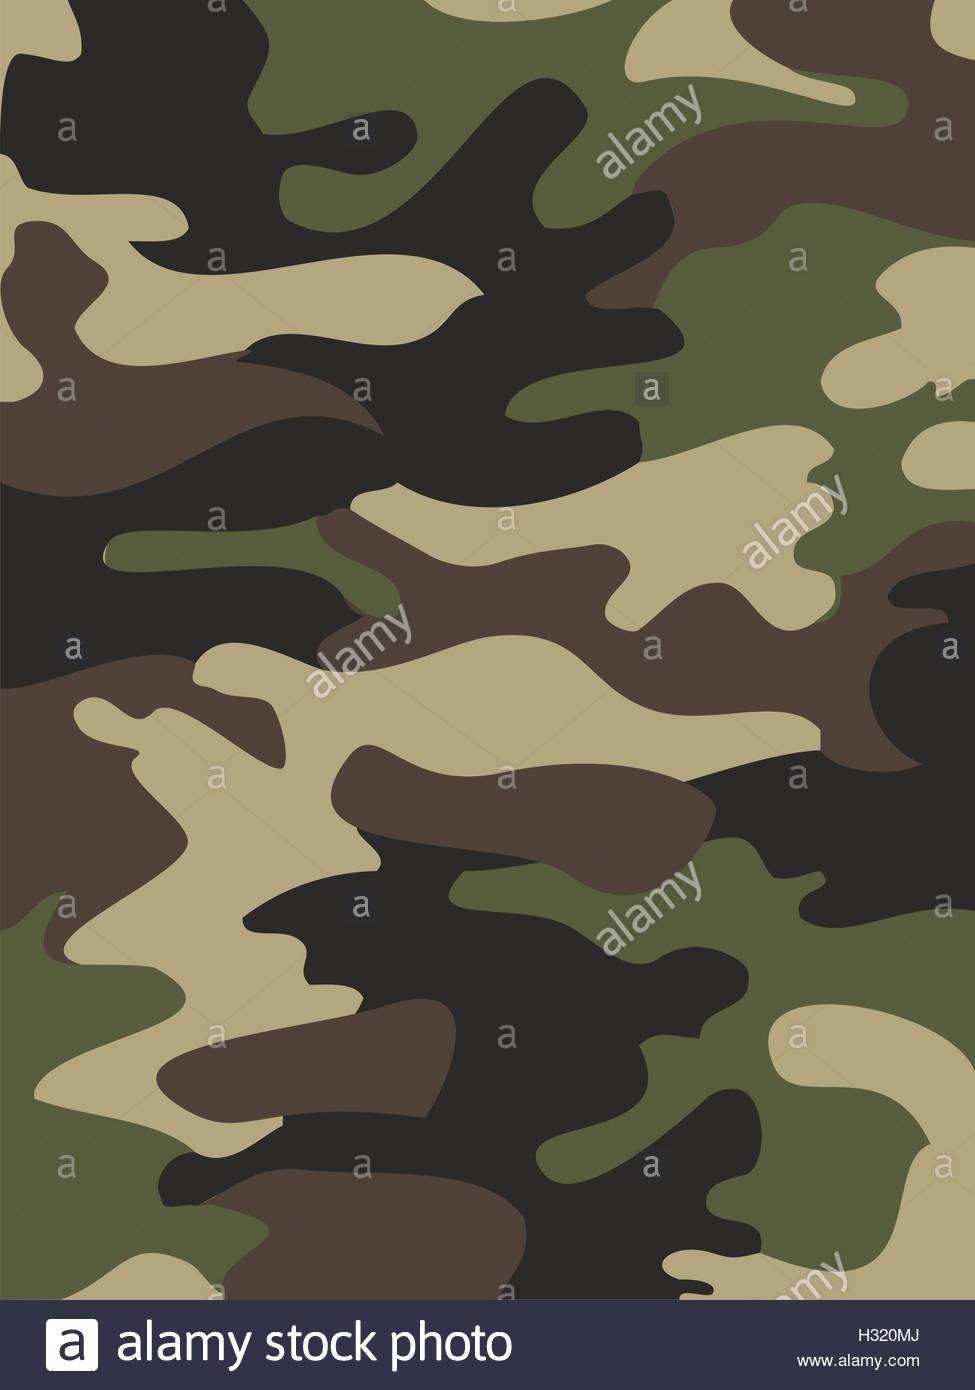 Camouflage Muster Hintergrund Nahtloser Vektor Illustration Klassische Kleidungsstil Maskierung Camo Wiederholten Druck Grun Braun Schwarz Stock Vektorgrafik Alamy